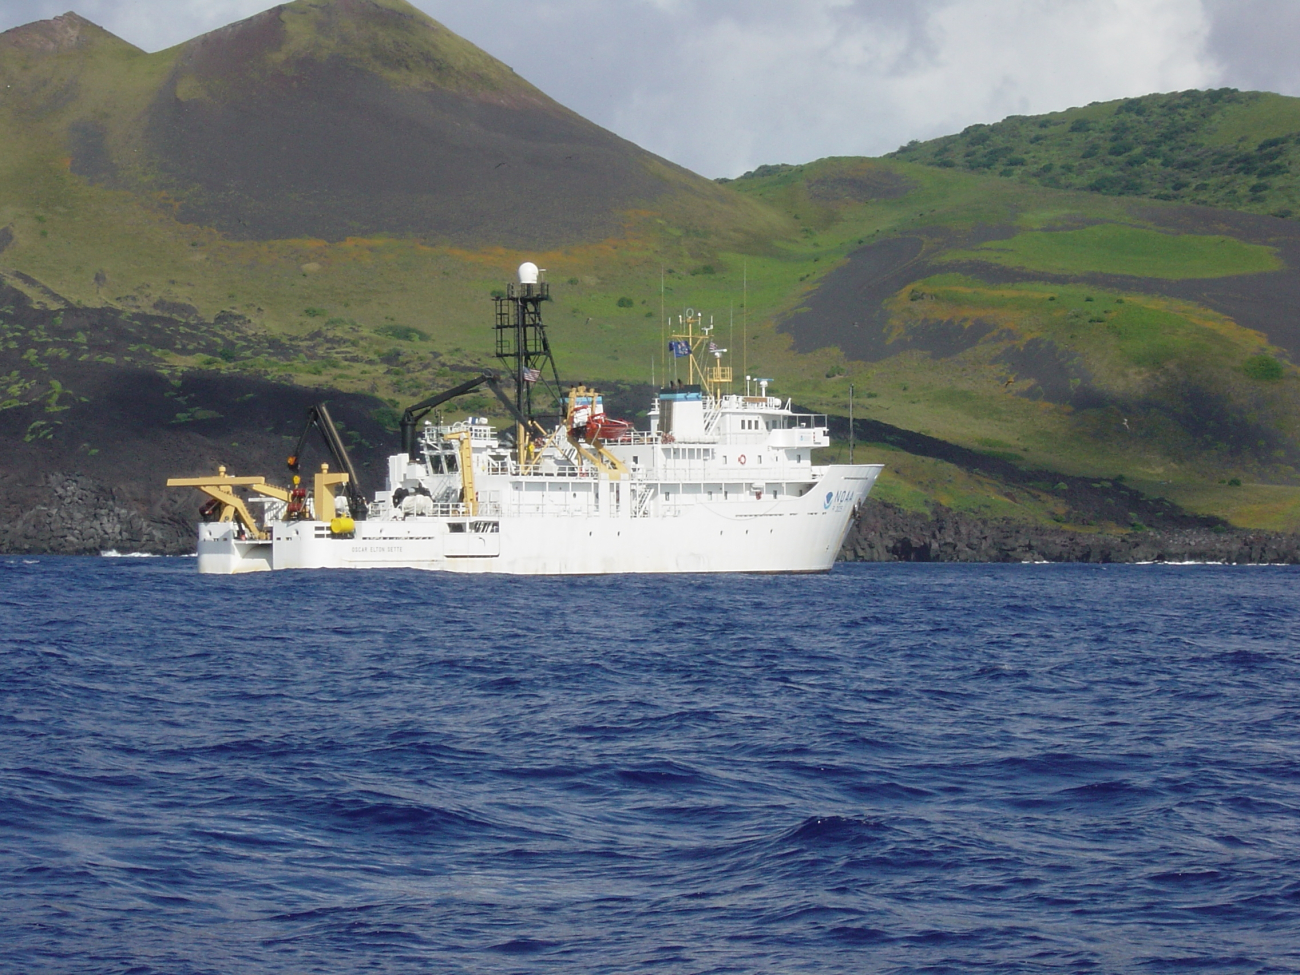 NOAA Ship OSCAR ELTON SETTE at anchor off a volcanic island